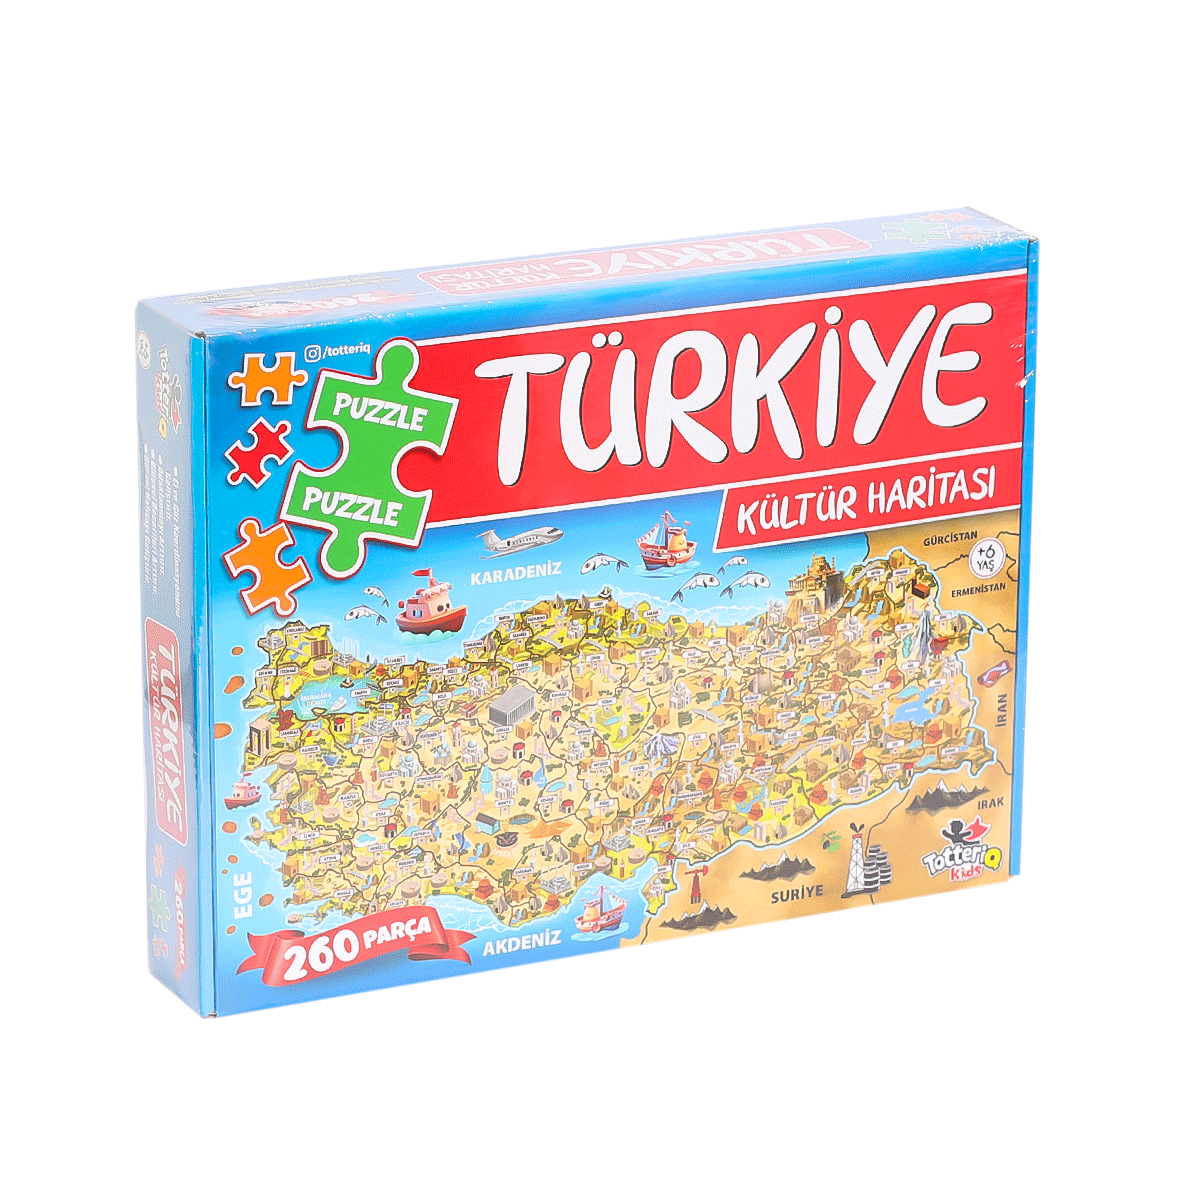 7213 Türkiye Kültür Haritası Puzzle -Totteriq